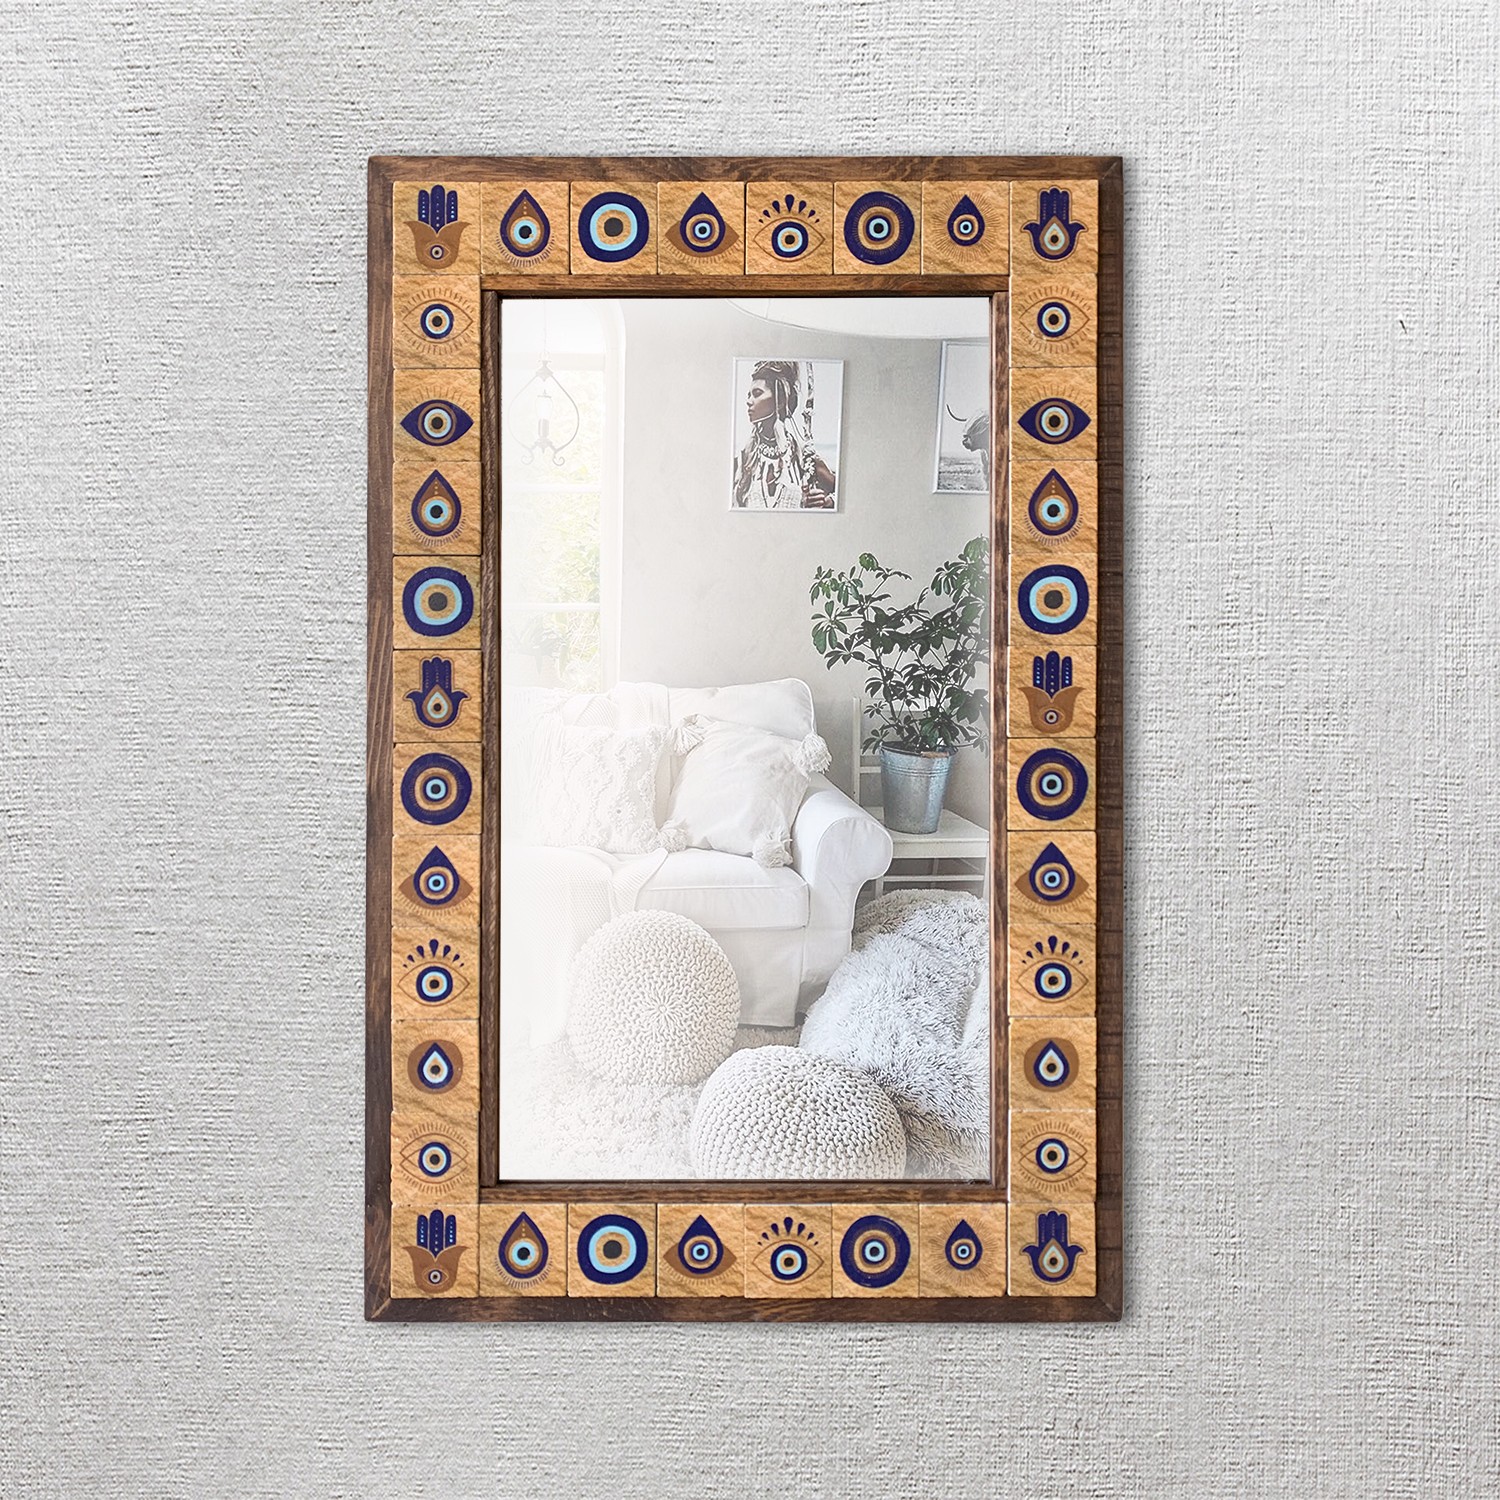 Nazar Taş Duvar Aynası, Ahşap Çerçeveli Dekoratif Ayna, Salon Konsol Boy Aynası, Wall Mirror